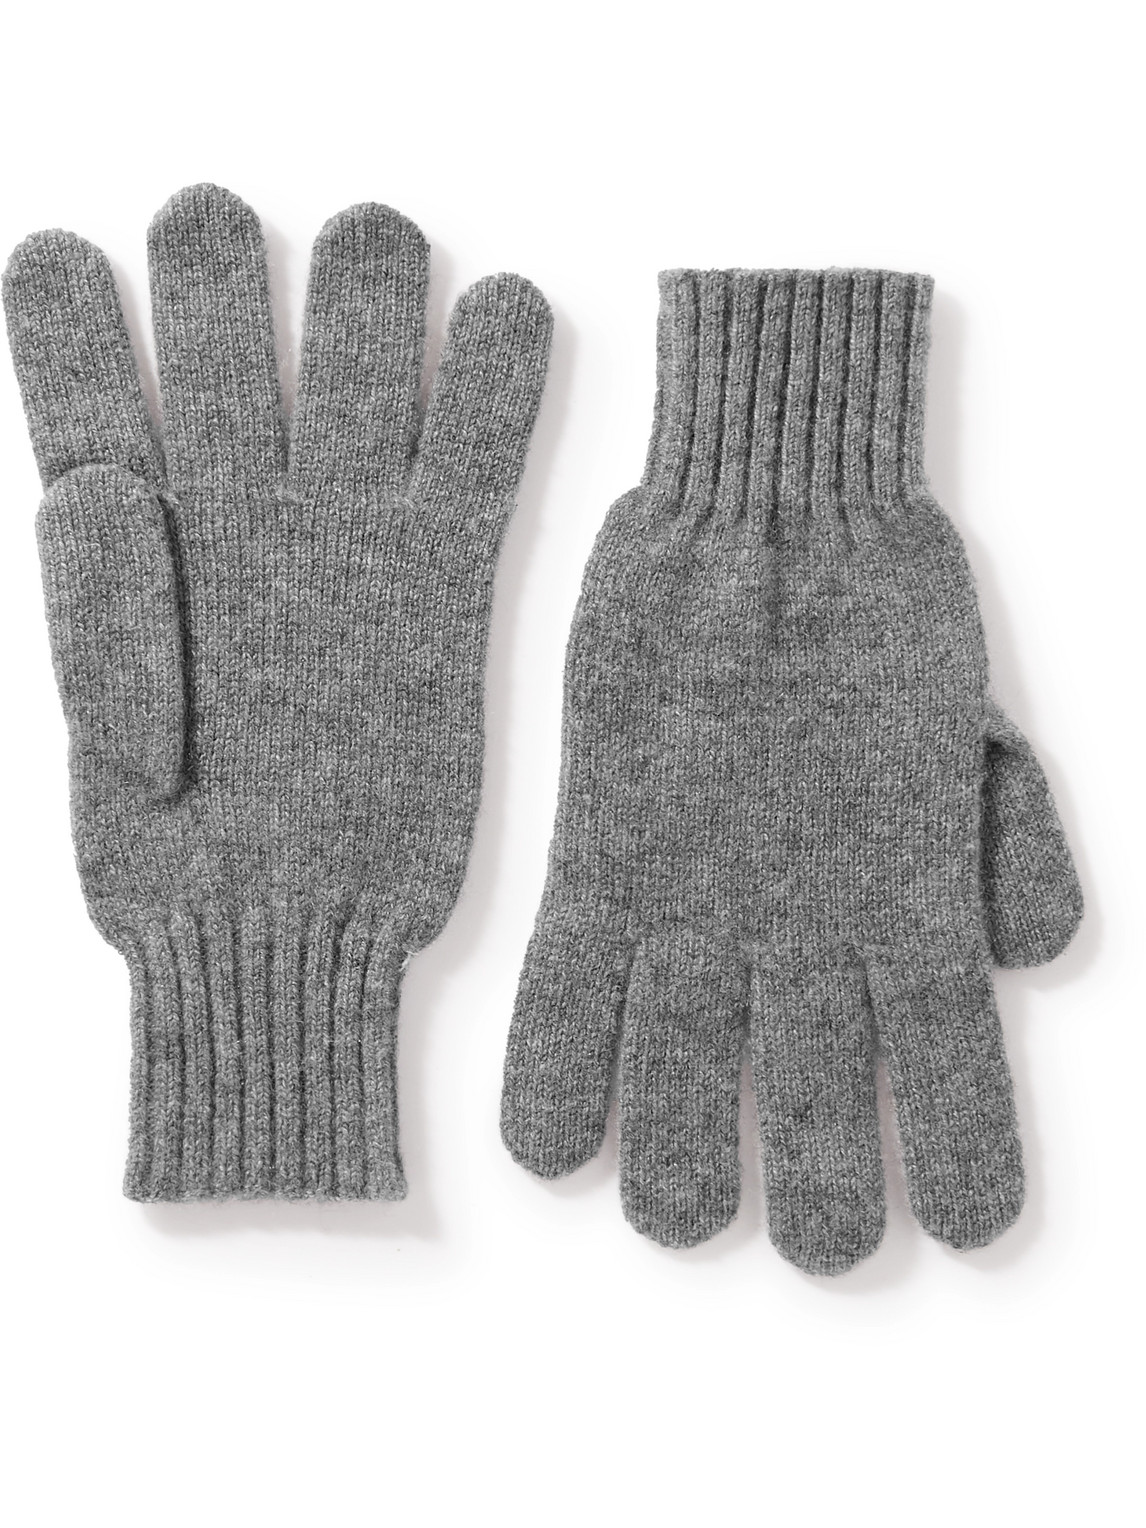 Rubinacci Cashmere Gloves In Grey